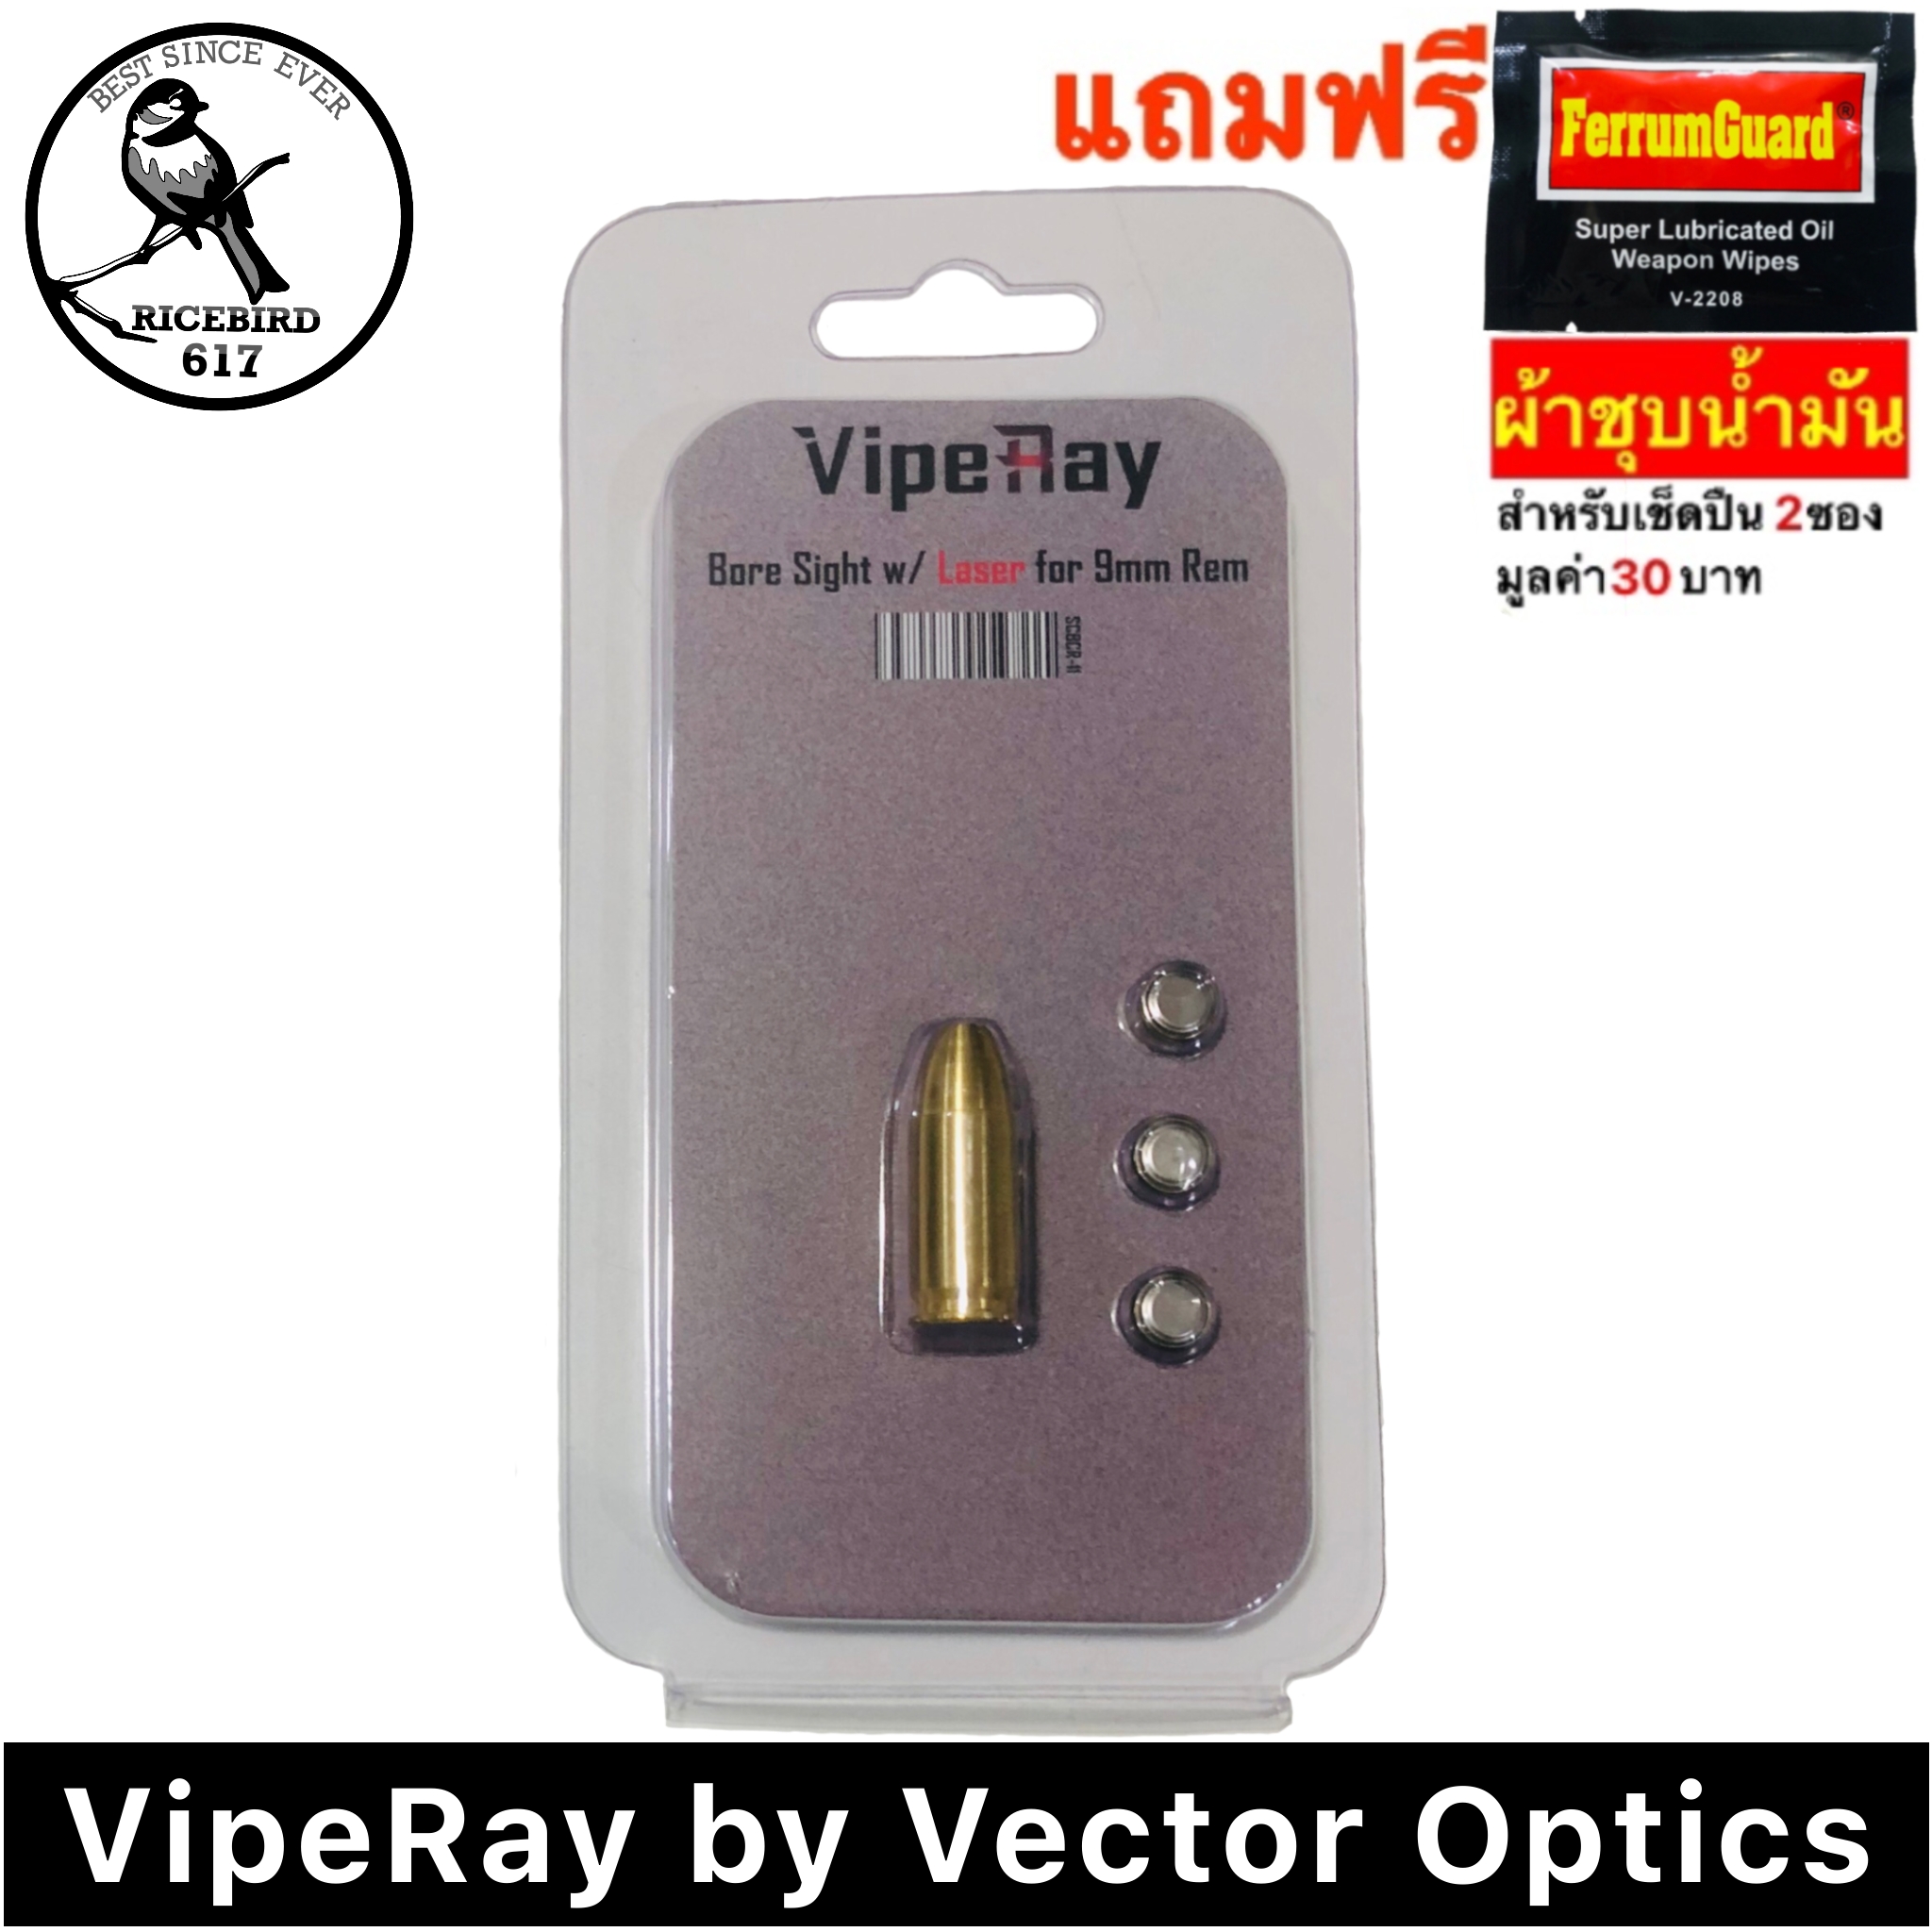 เลเซอร์ 9 มม, VipeRay by Vector Optics เลเซอร์ตั้งศูนย์ 9 มม. , 9 mm Laser Bore Sight